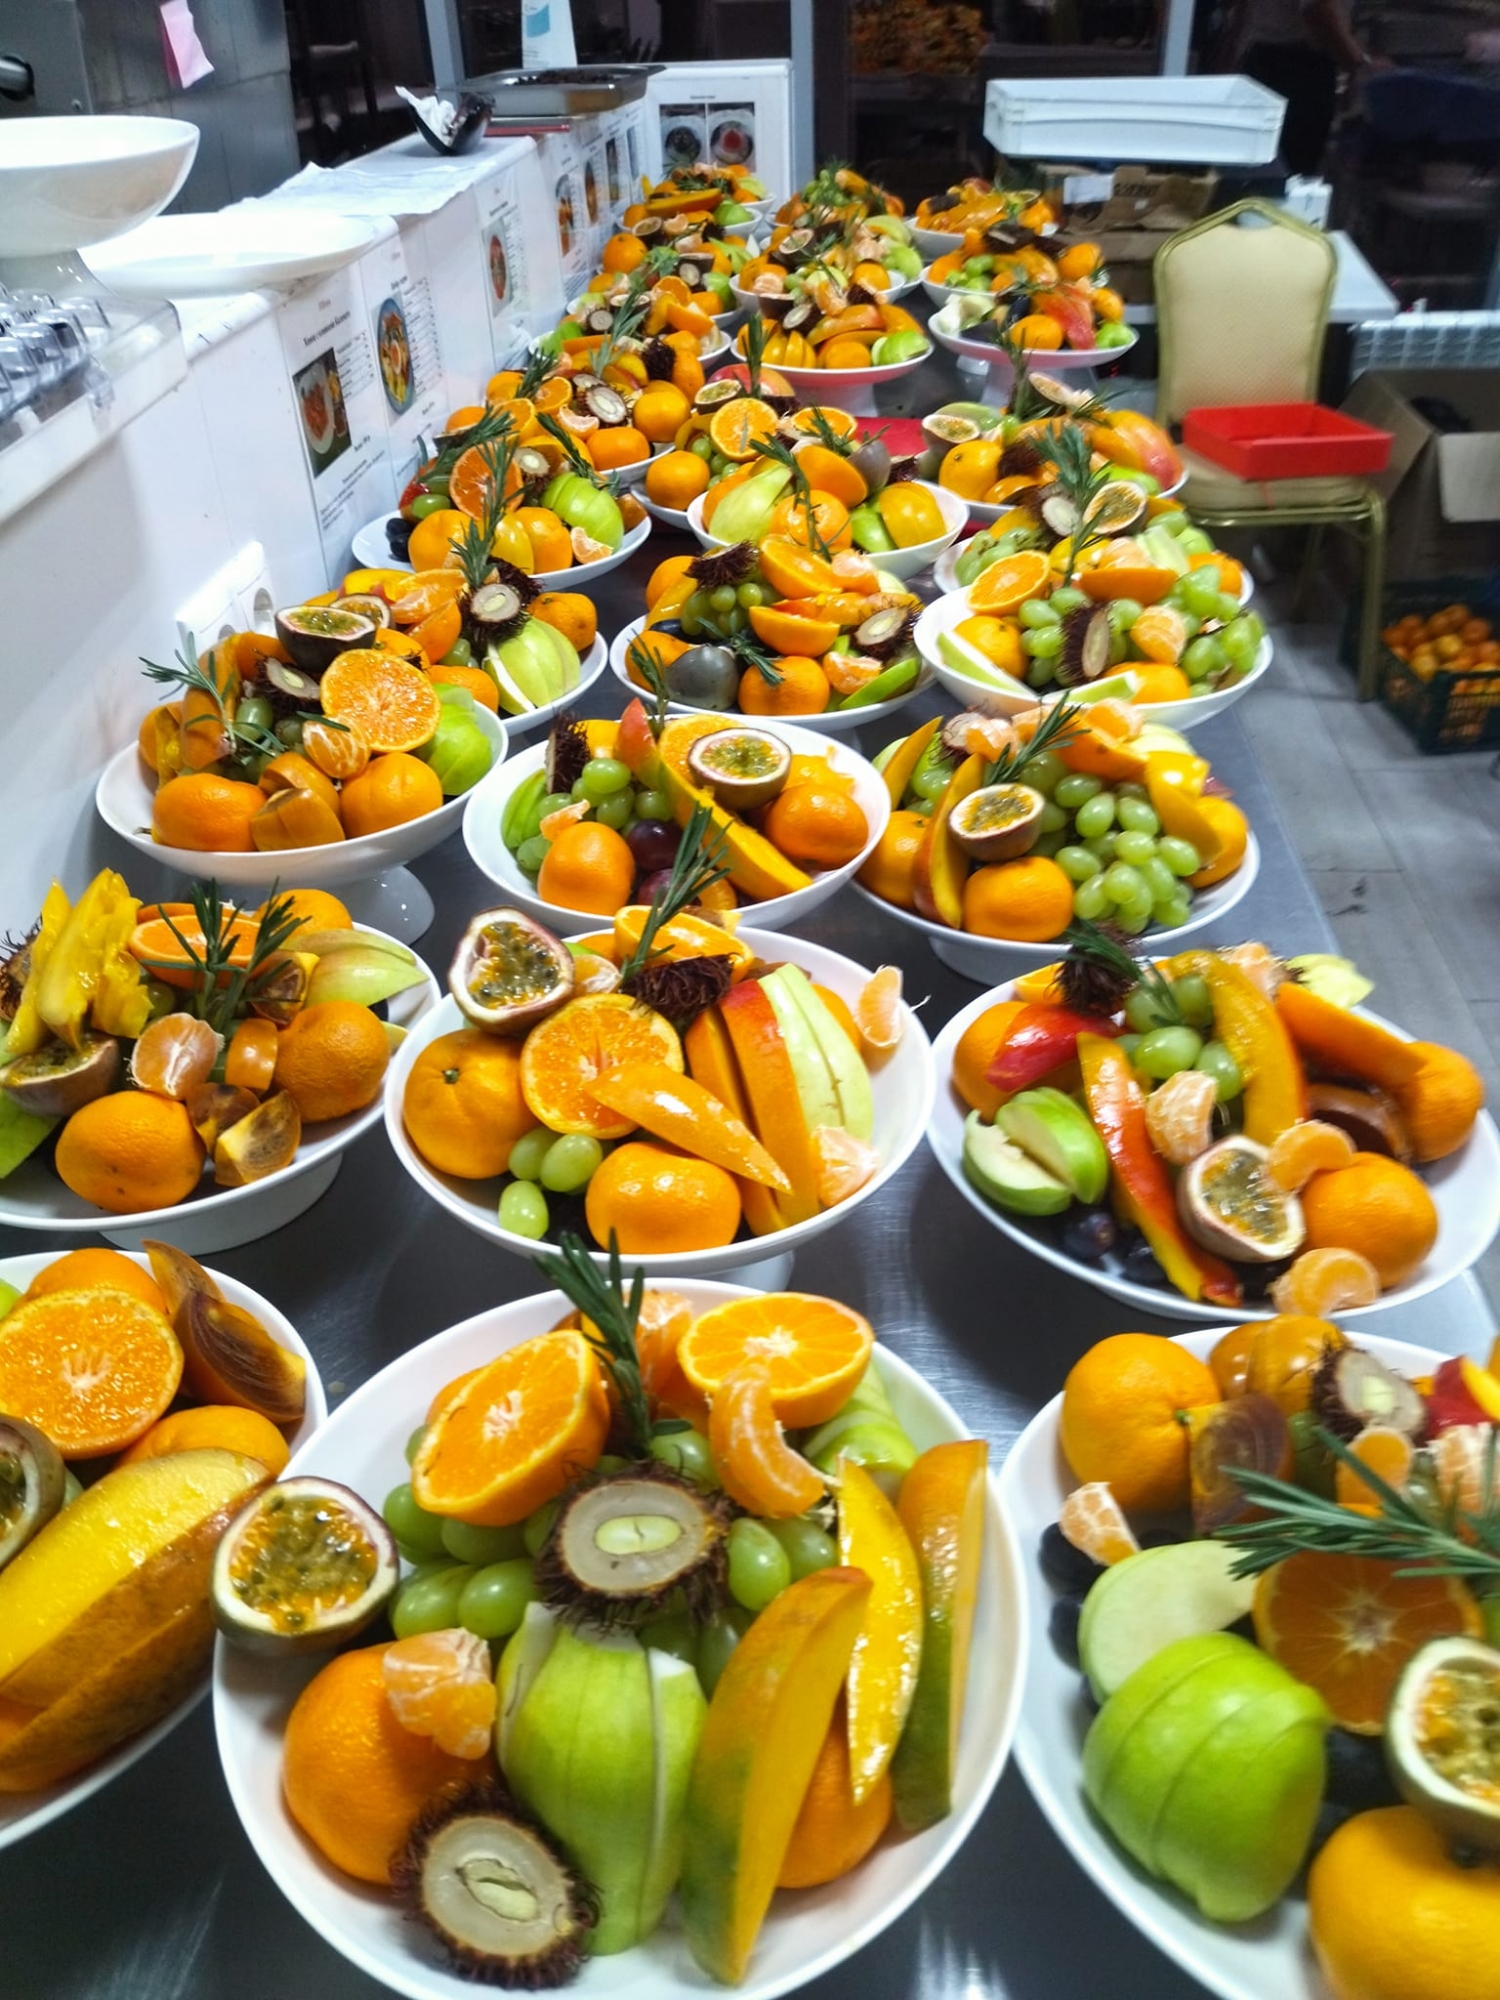 Фруктовое ассорти с экзотическими фруктами: манго, маракуйя, рамбутан